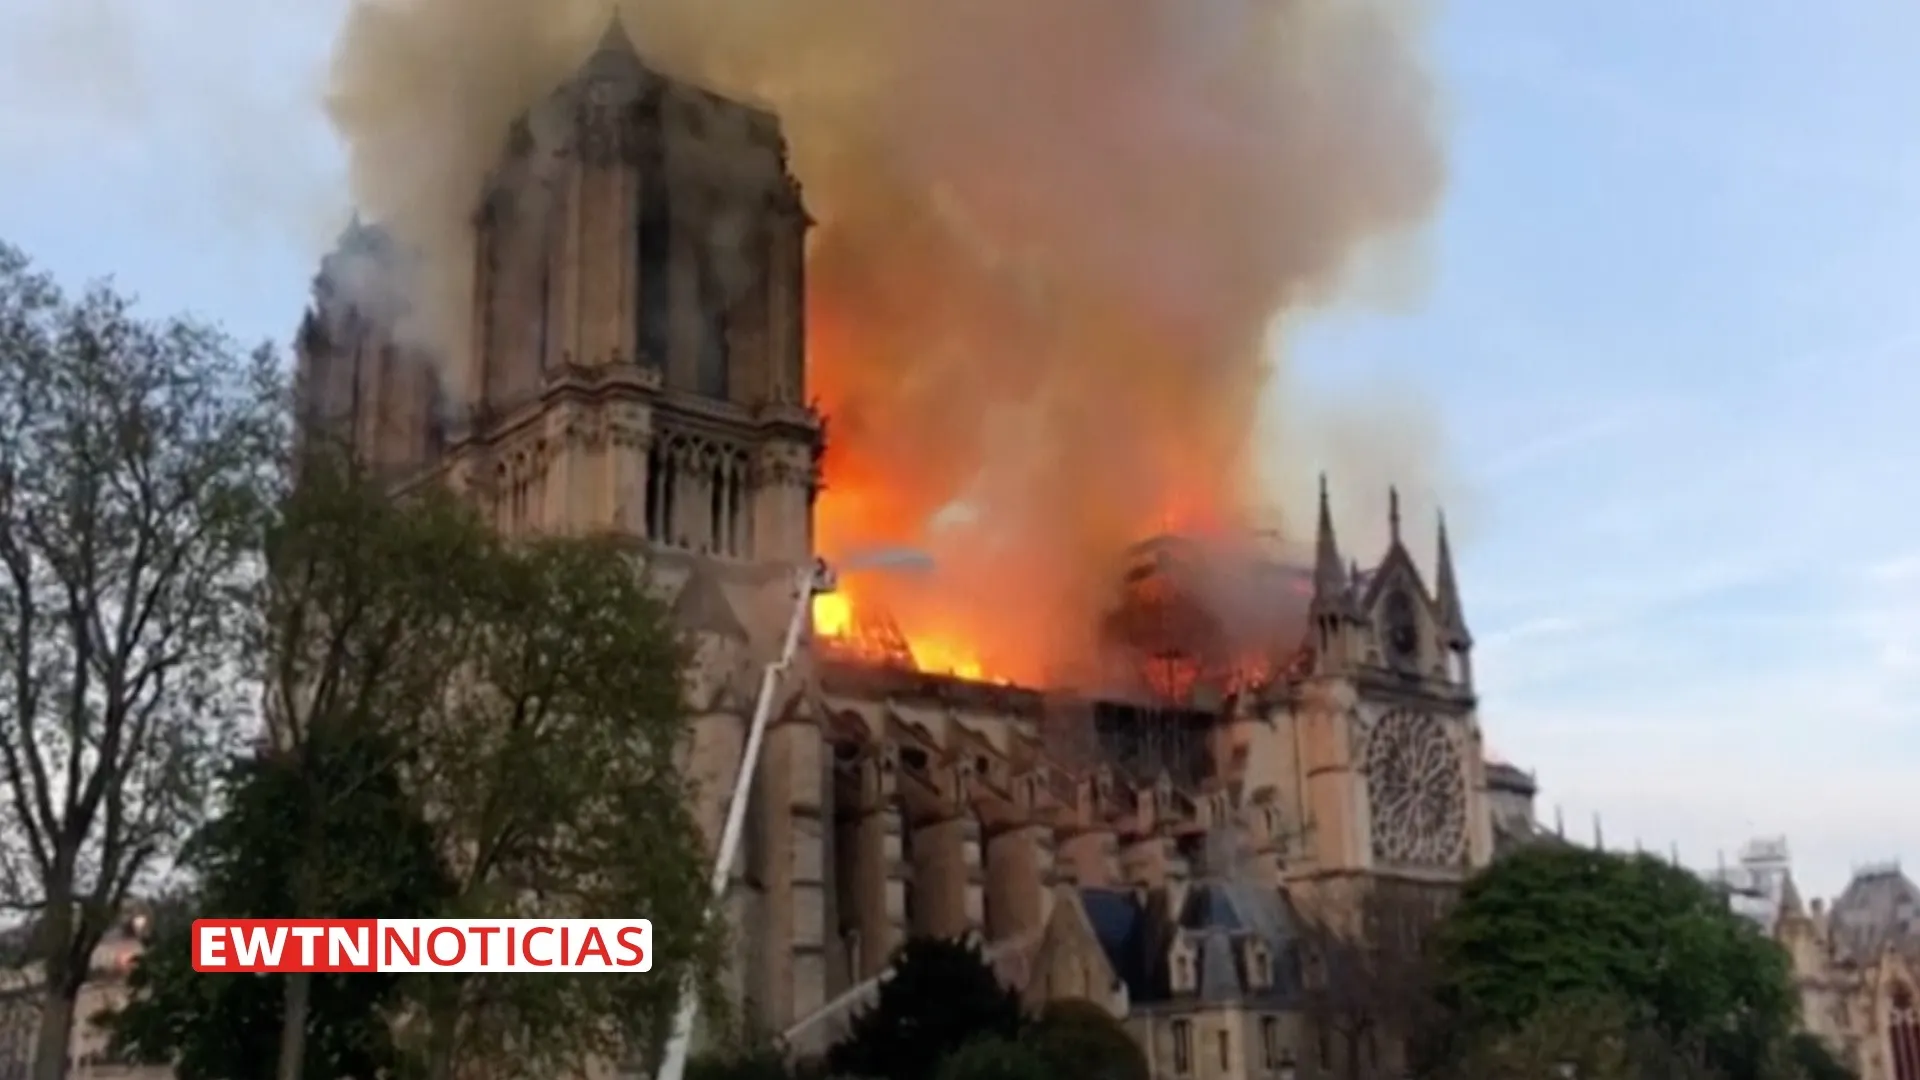 Arzobispo de París pide doblar las campanas para rezar ante incendio en Notre Dame